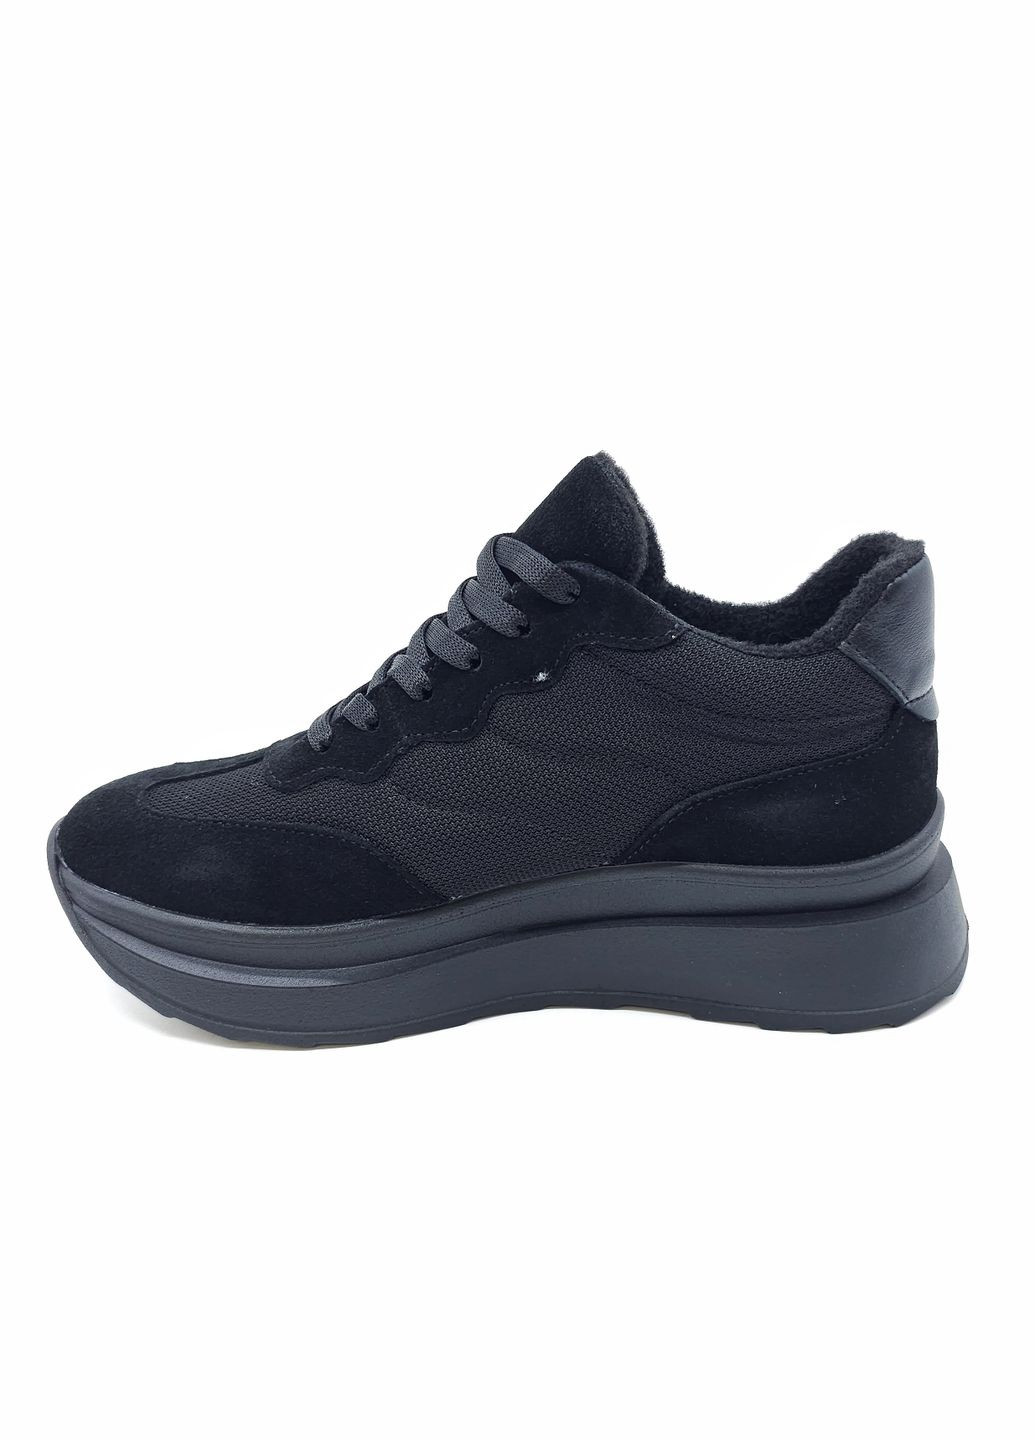 Чорні всесезонні жіночі кросівки чорні шкіряні mr-12-5 27 см (р) Morento